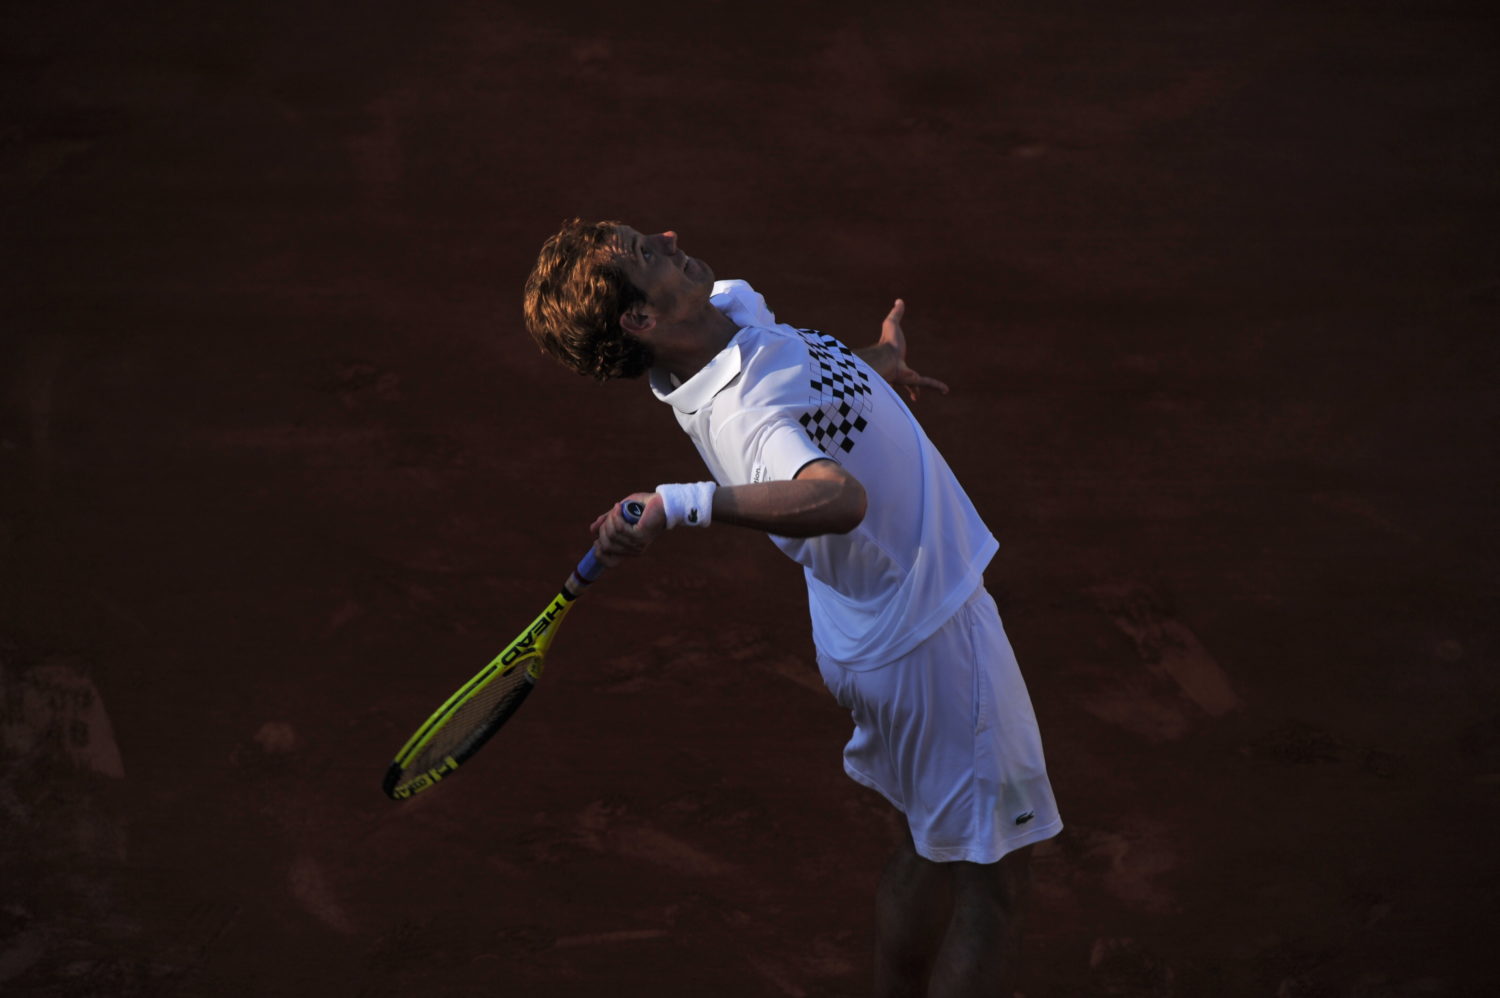 Richard Gasquet, Roland-Garros 2010